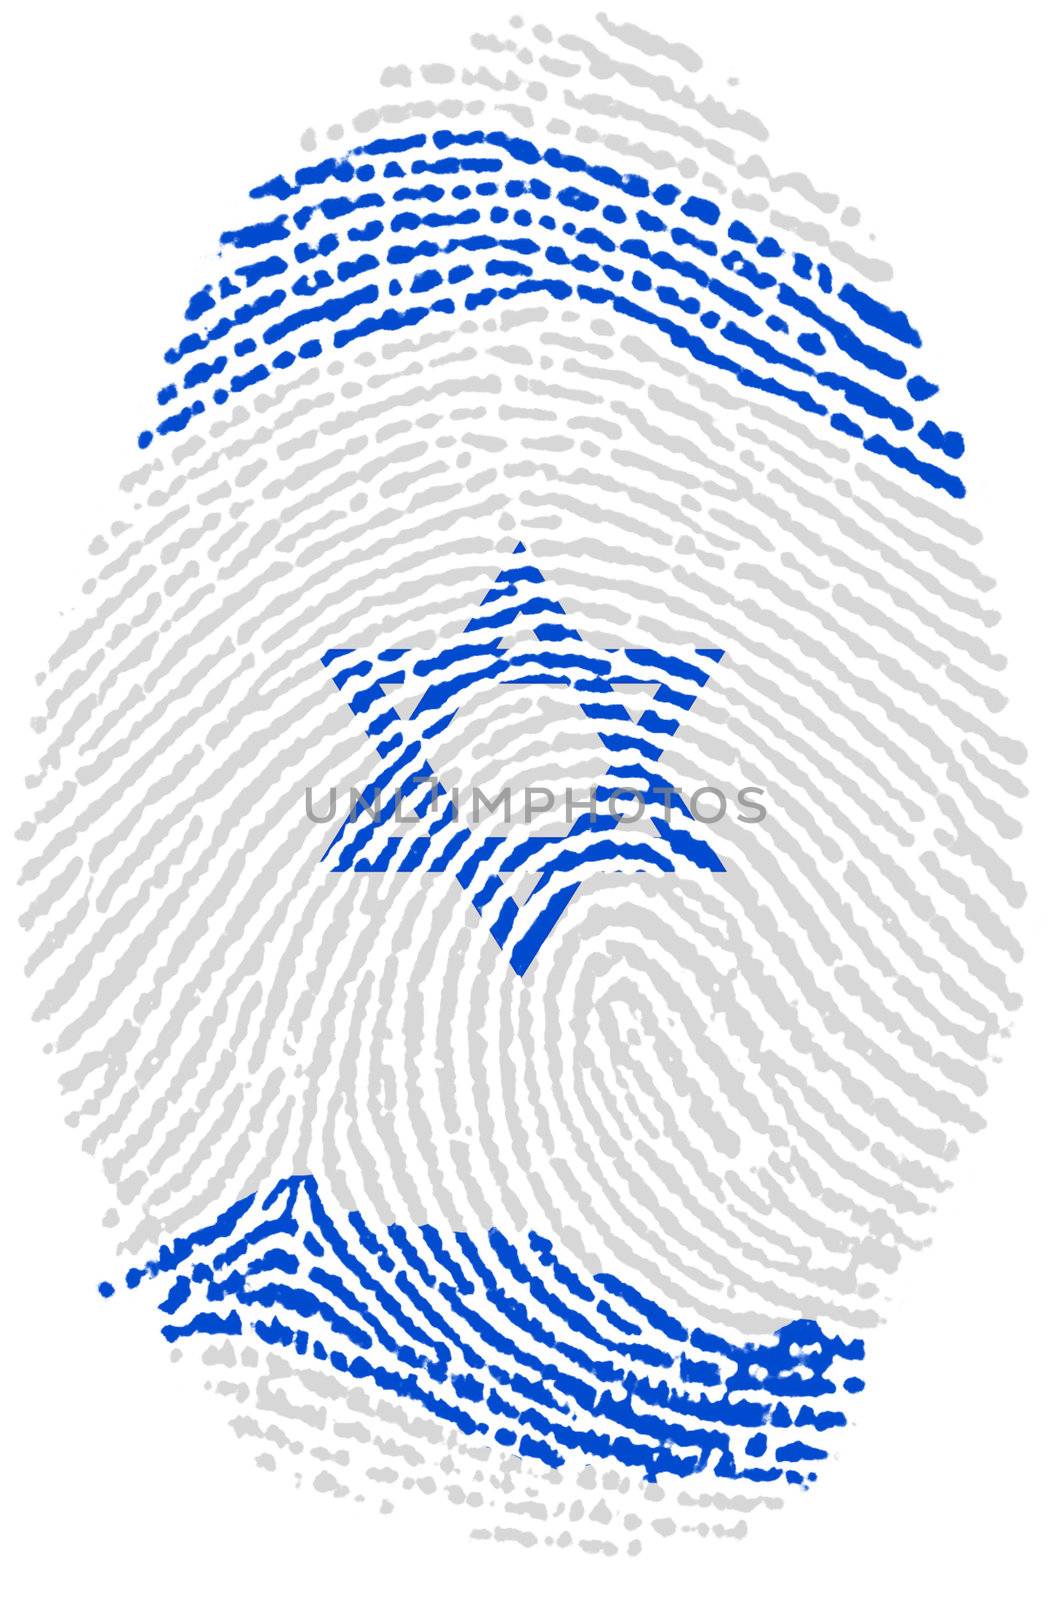 Israel fingerprint passport  flag on white paper